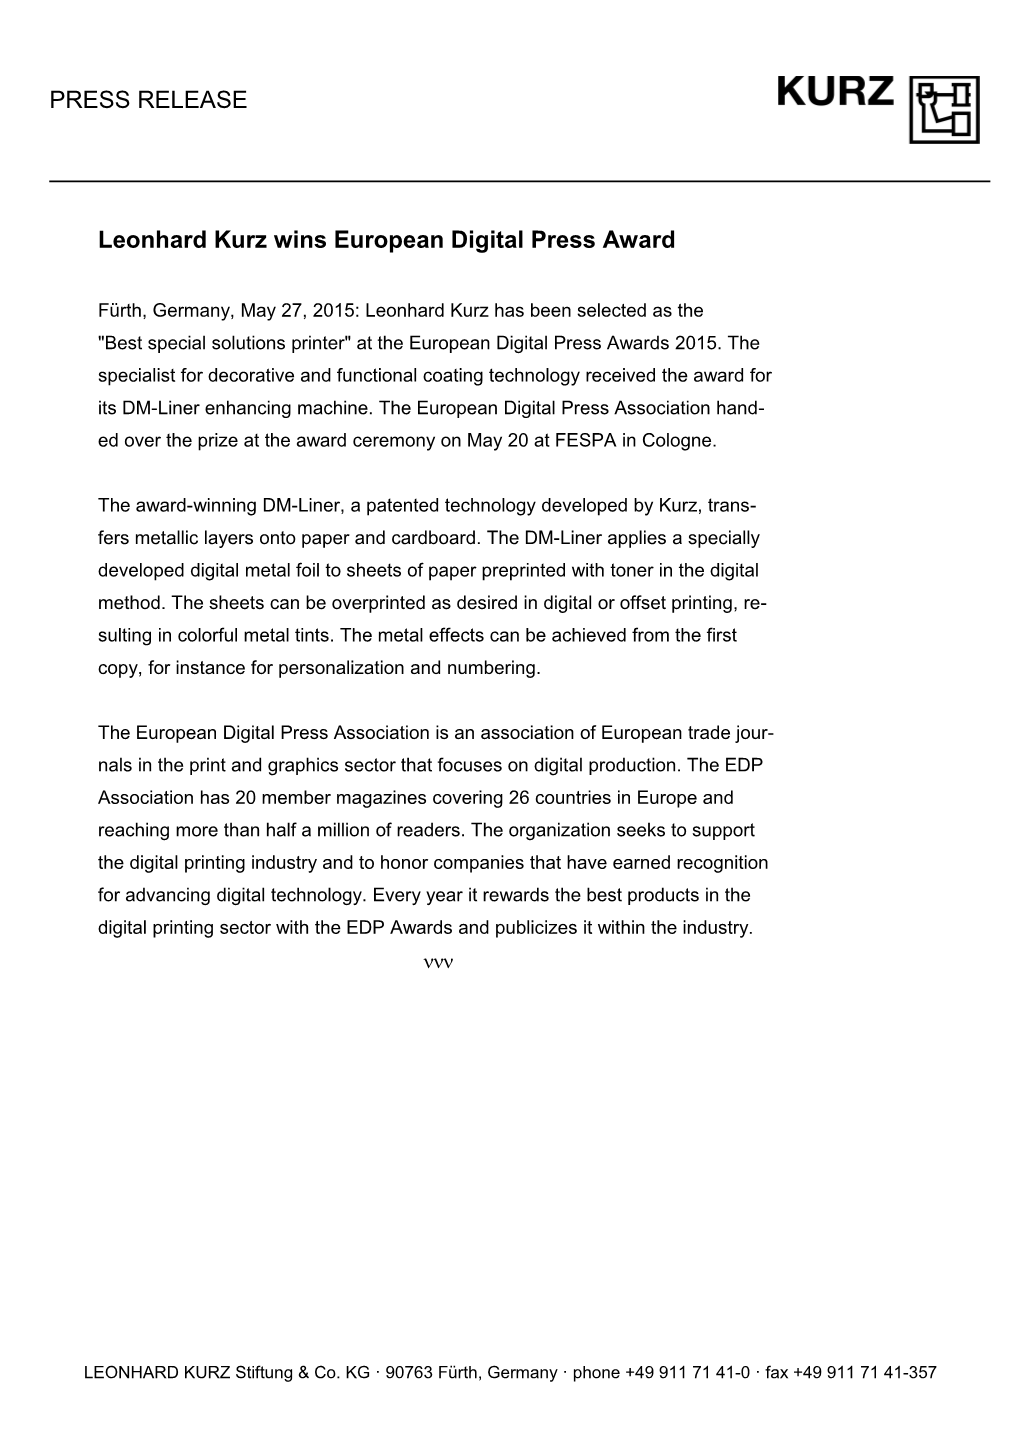 Leonhard Kurz Wins European Digital Press Award